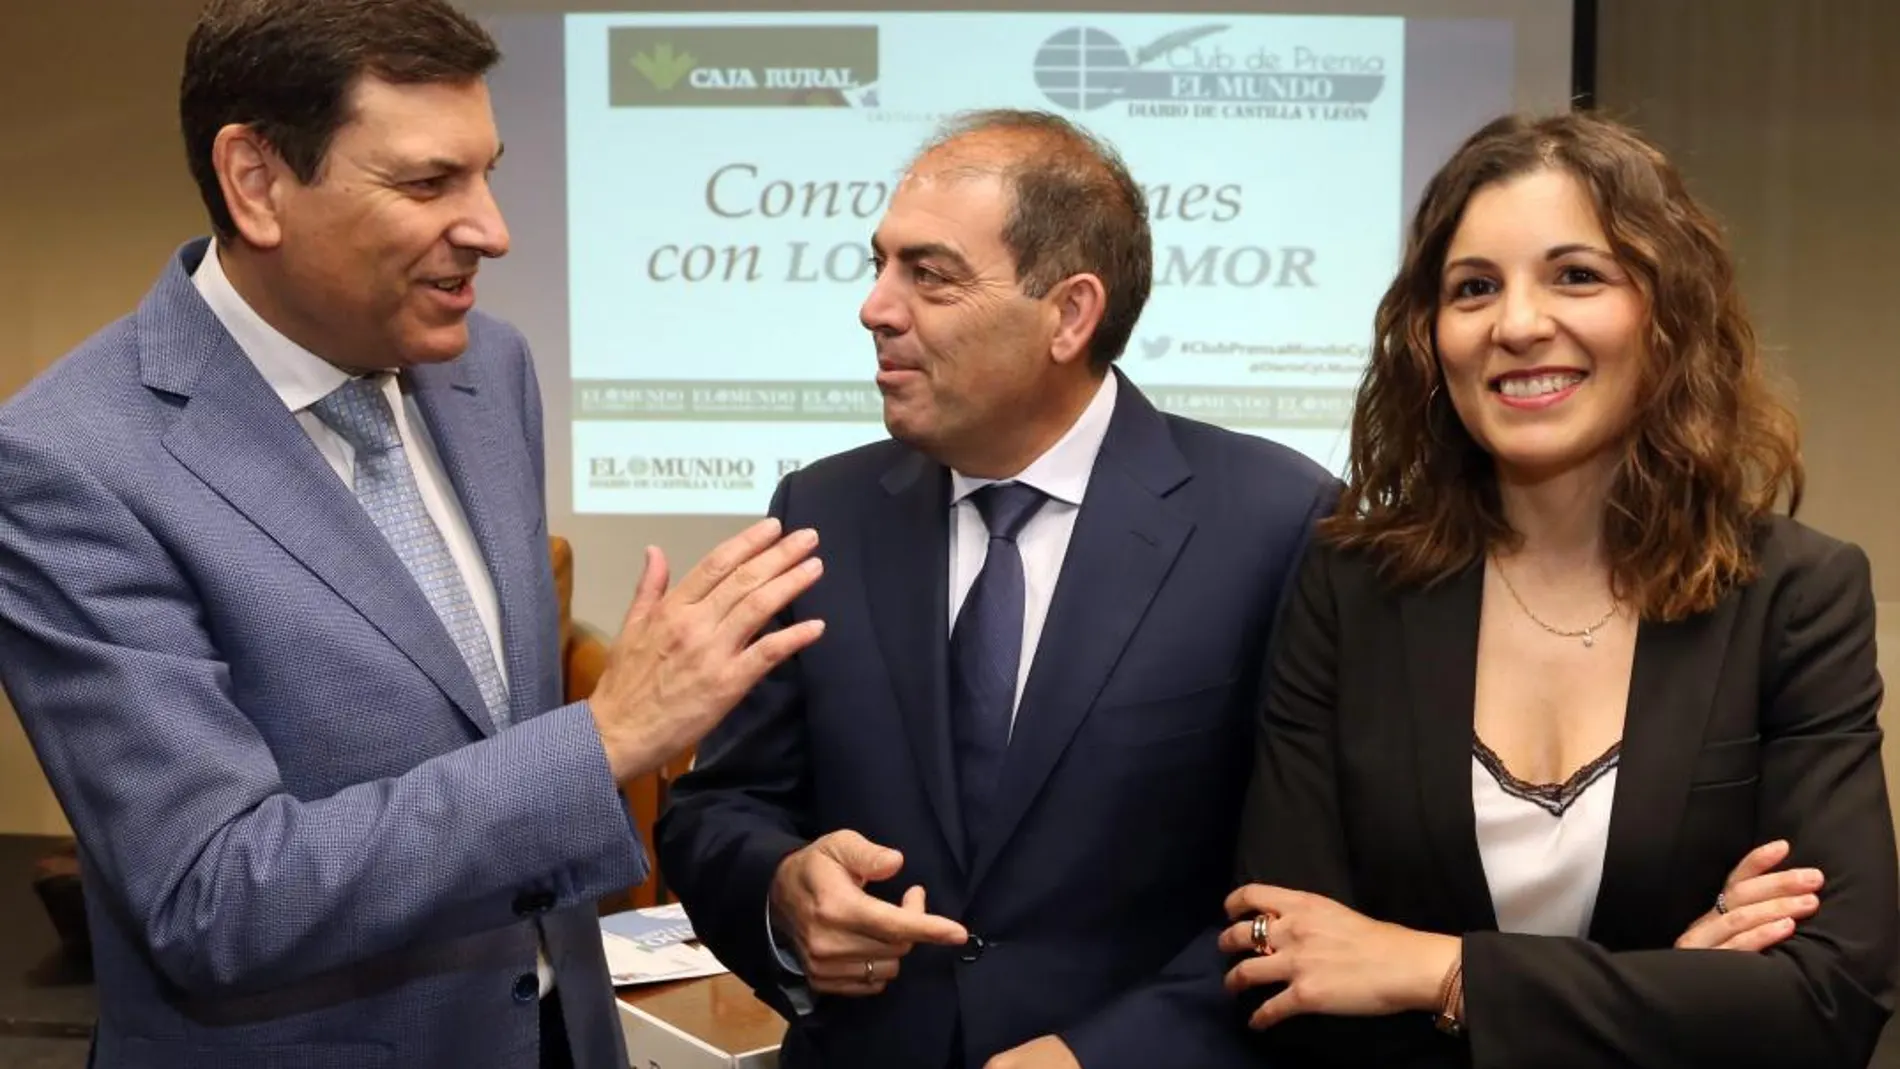 El consejero de Empleo, Carlos Fernández Carriedo, conversa con los presidentes nacional y regional de ATA, Lorenzo Amor y Soraya Mayo, respectivamente